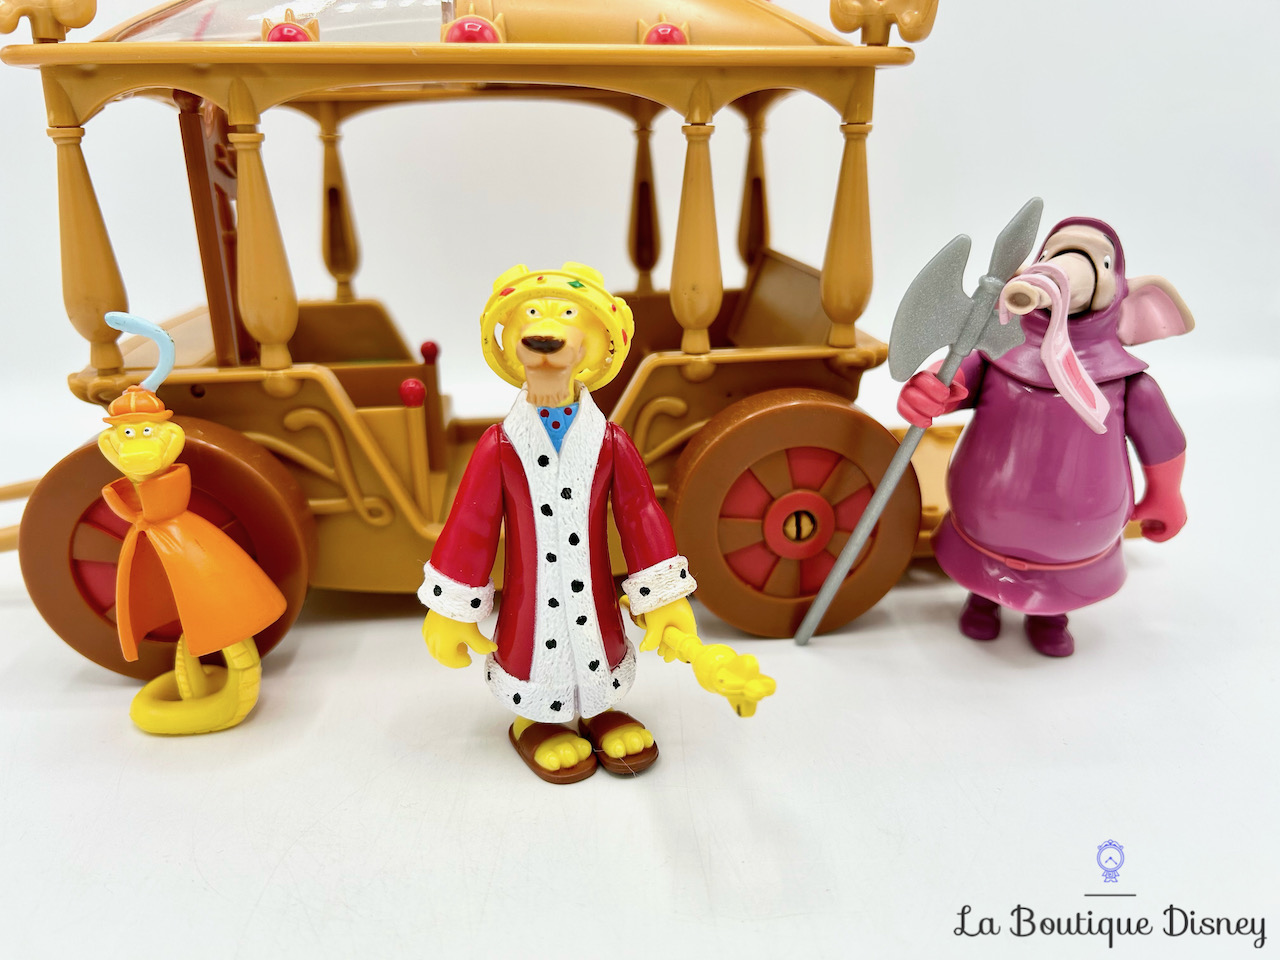 jouet-figurines-carrosse-robin-des-bois-jean-disney-heroes-famosa-vintage-2